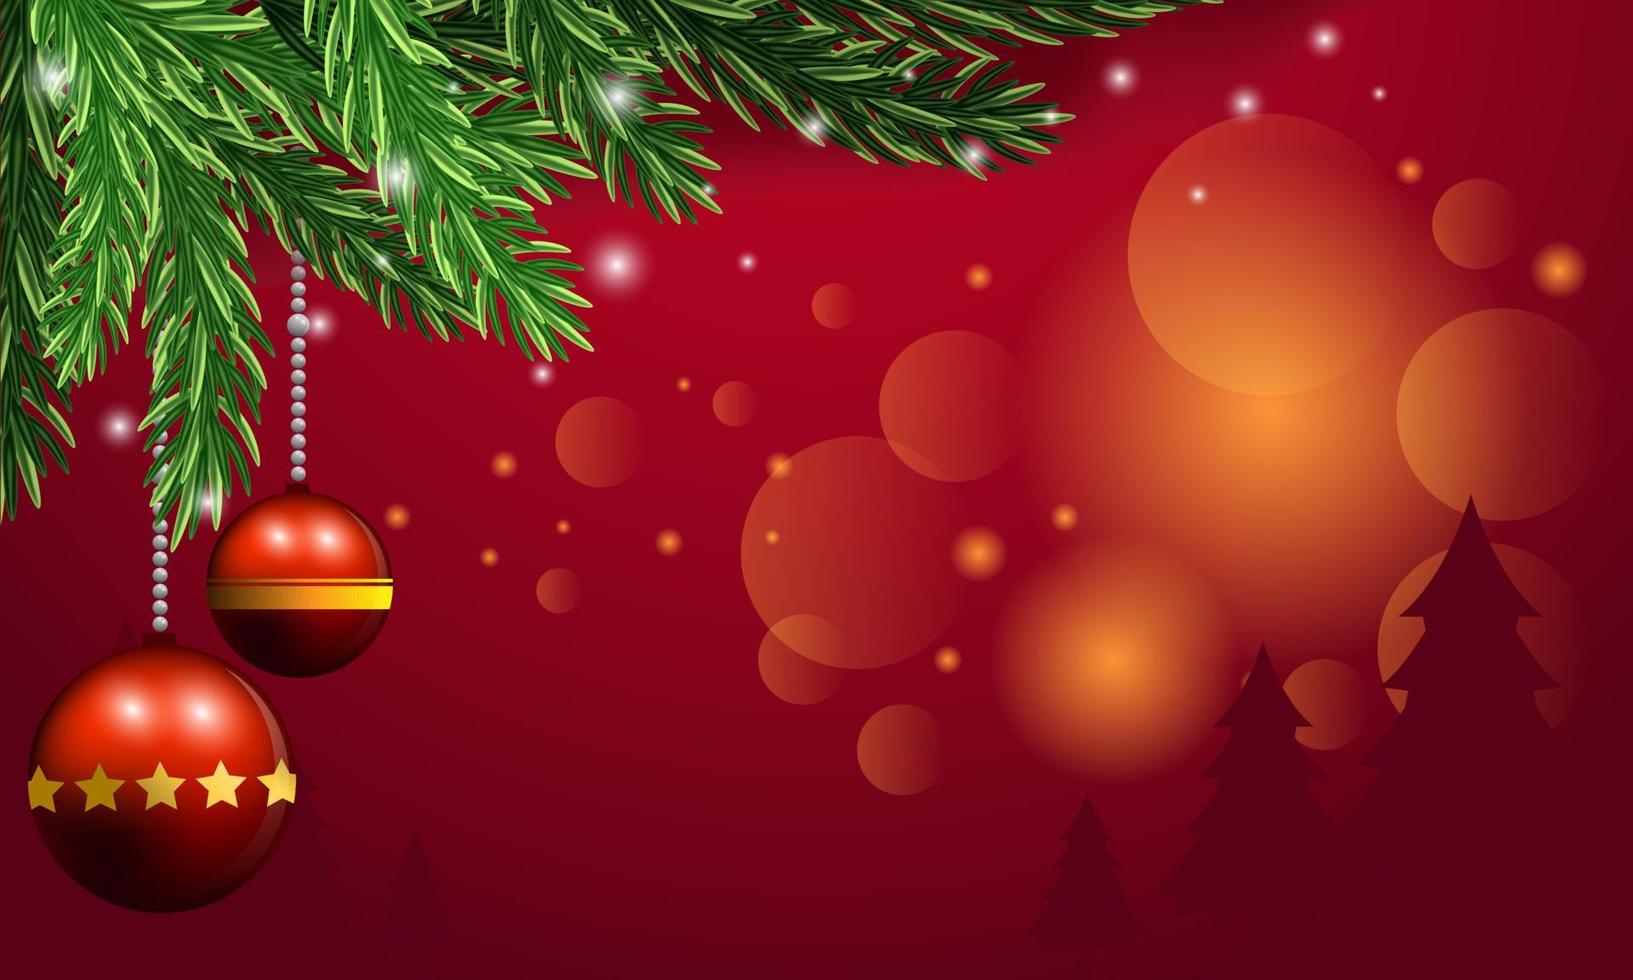 roter weihnachtshintergrund mit kiefernblättern, zwergen, glocken und sternen auf einer roten szene. vektor